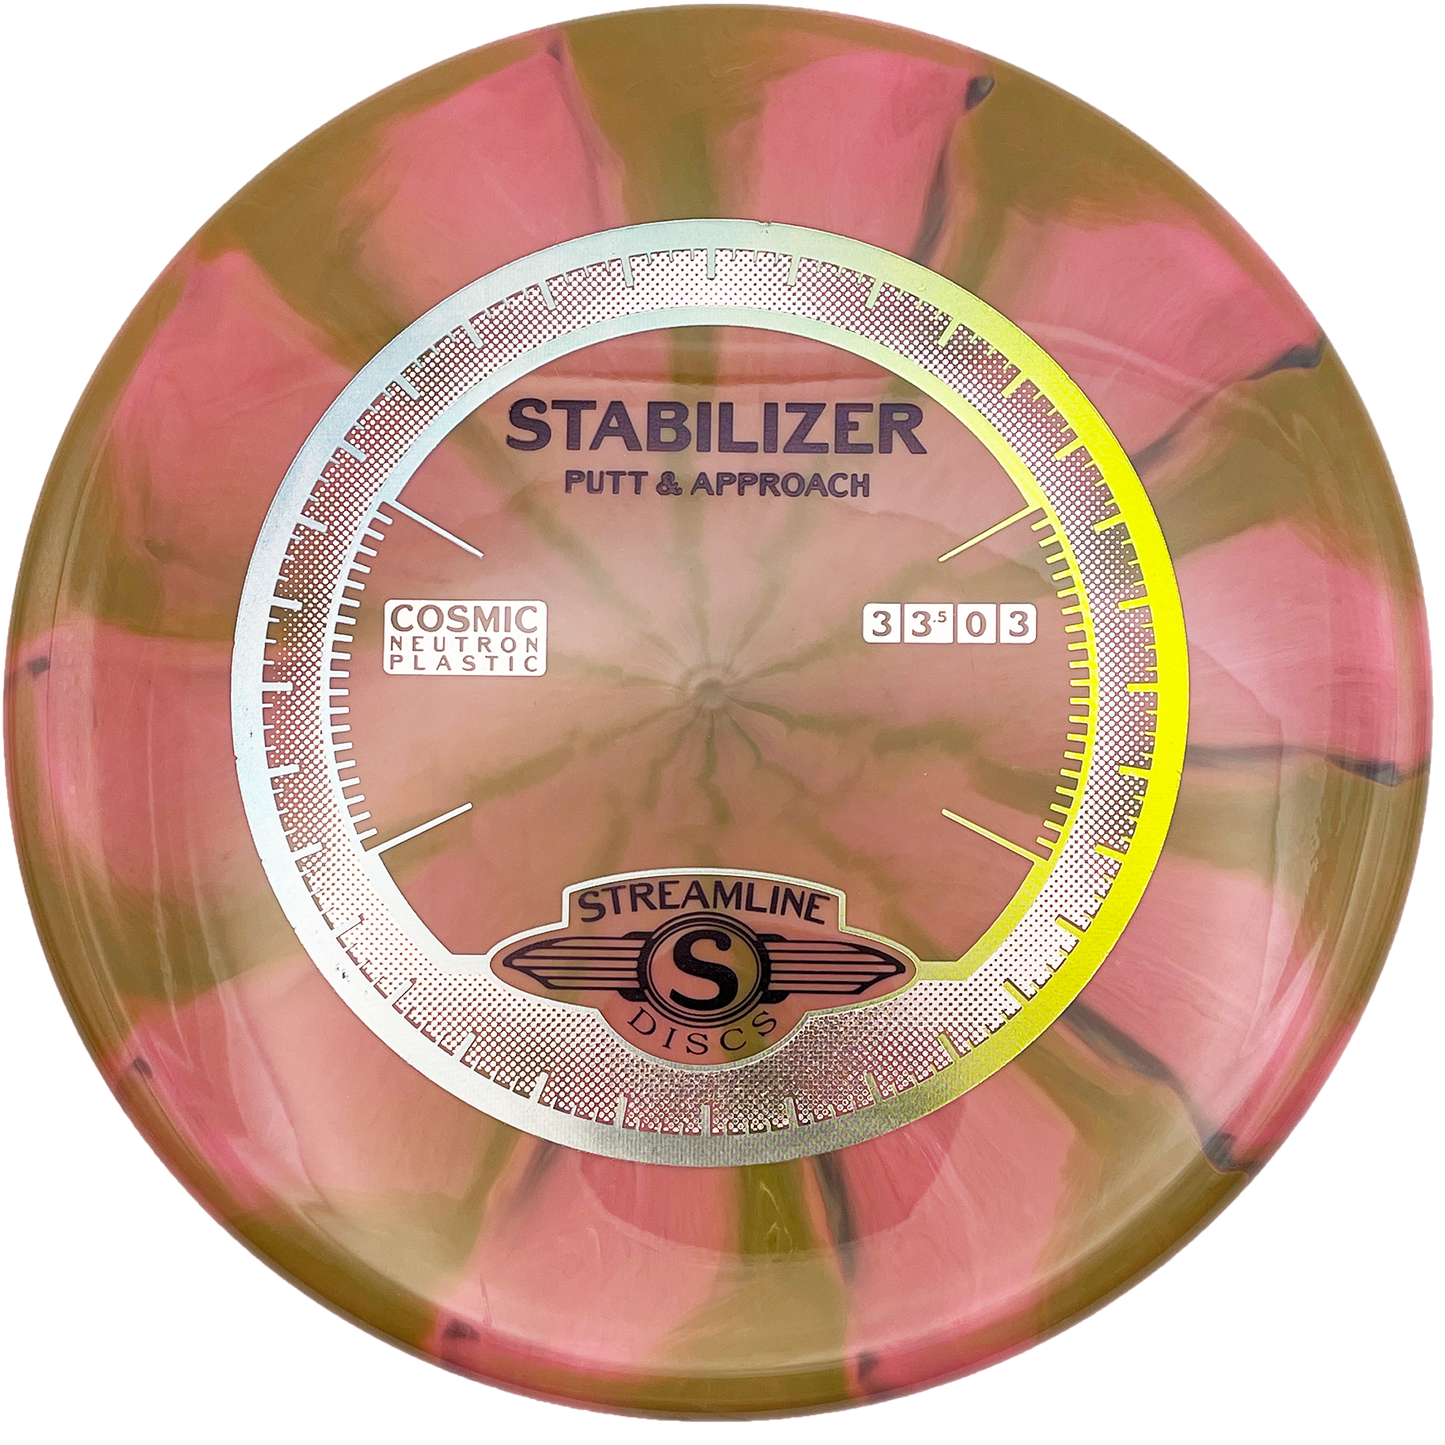 Streamline Stabilizer - Cosmic Neutron - Pink Swirl